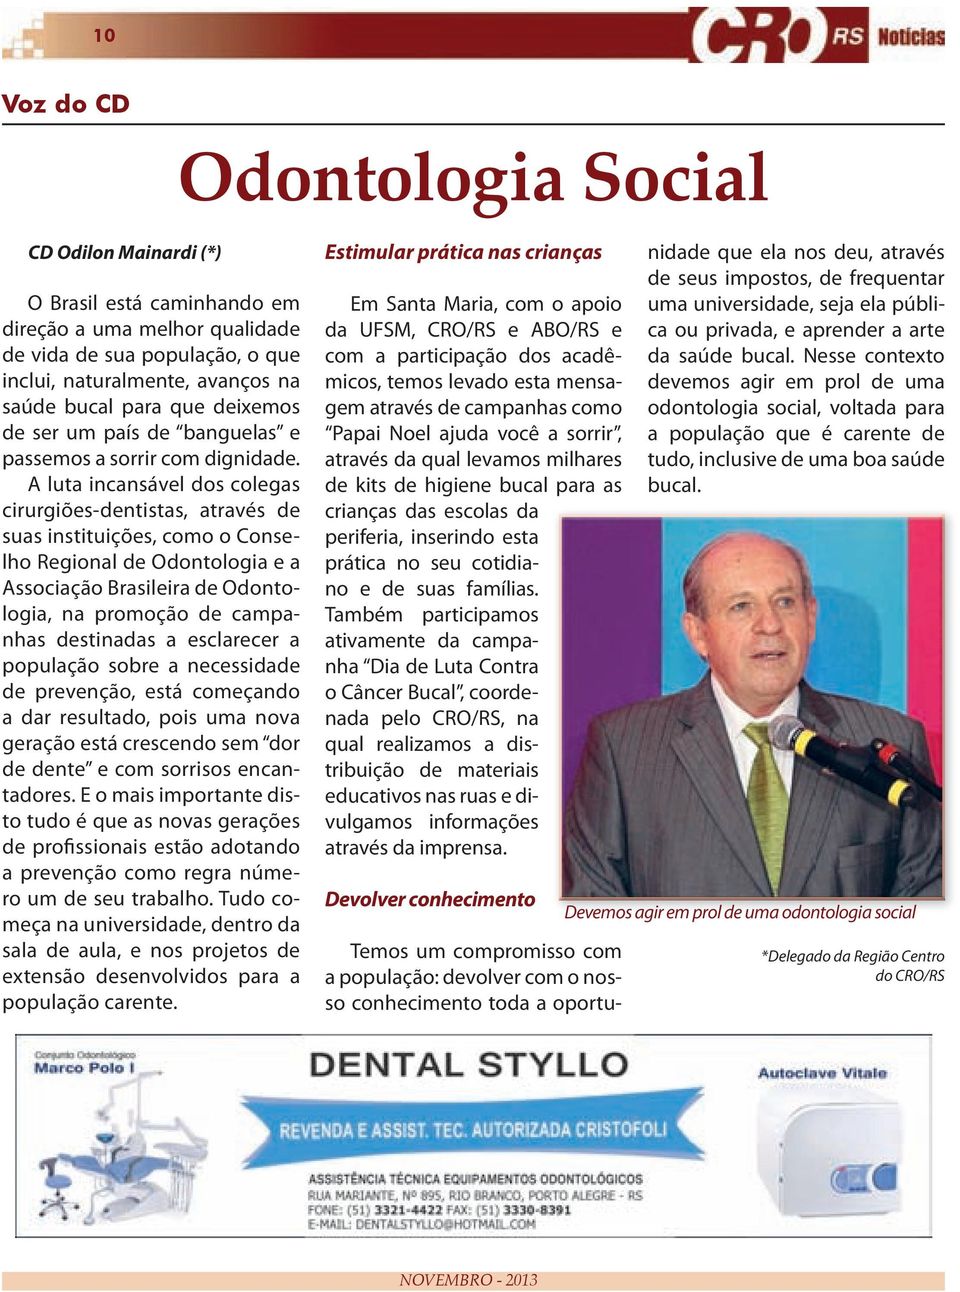 A luta incansável dos colegas cirurgiões-dentistas, através de suas instituições, como o Conselho Regional de Odontologia e a Associação Brasileira de Odontologia, na promoção de campanhas destinadas